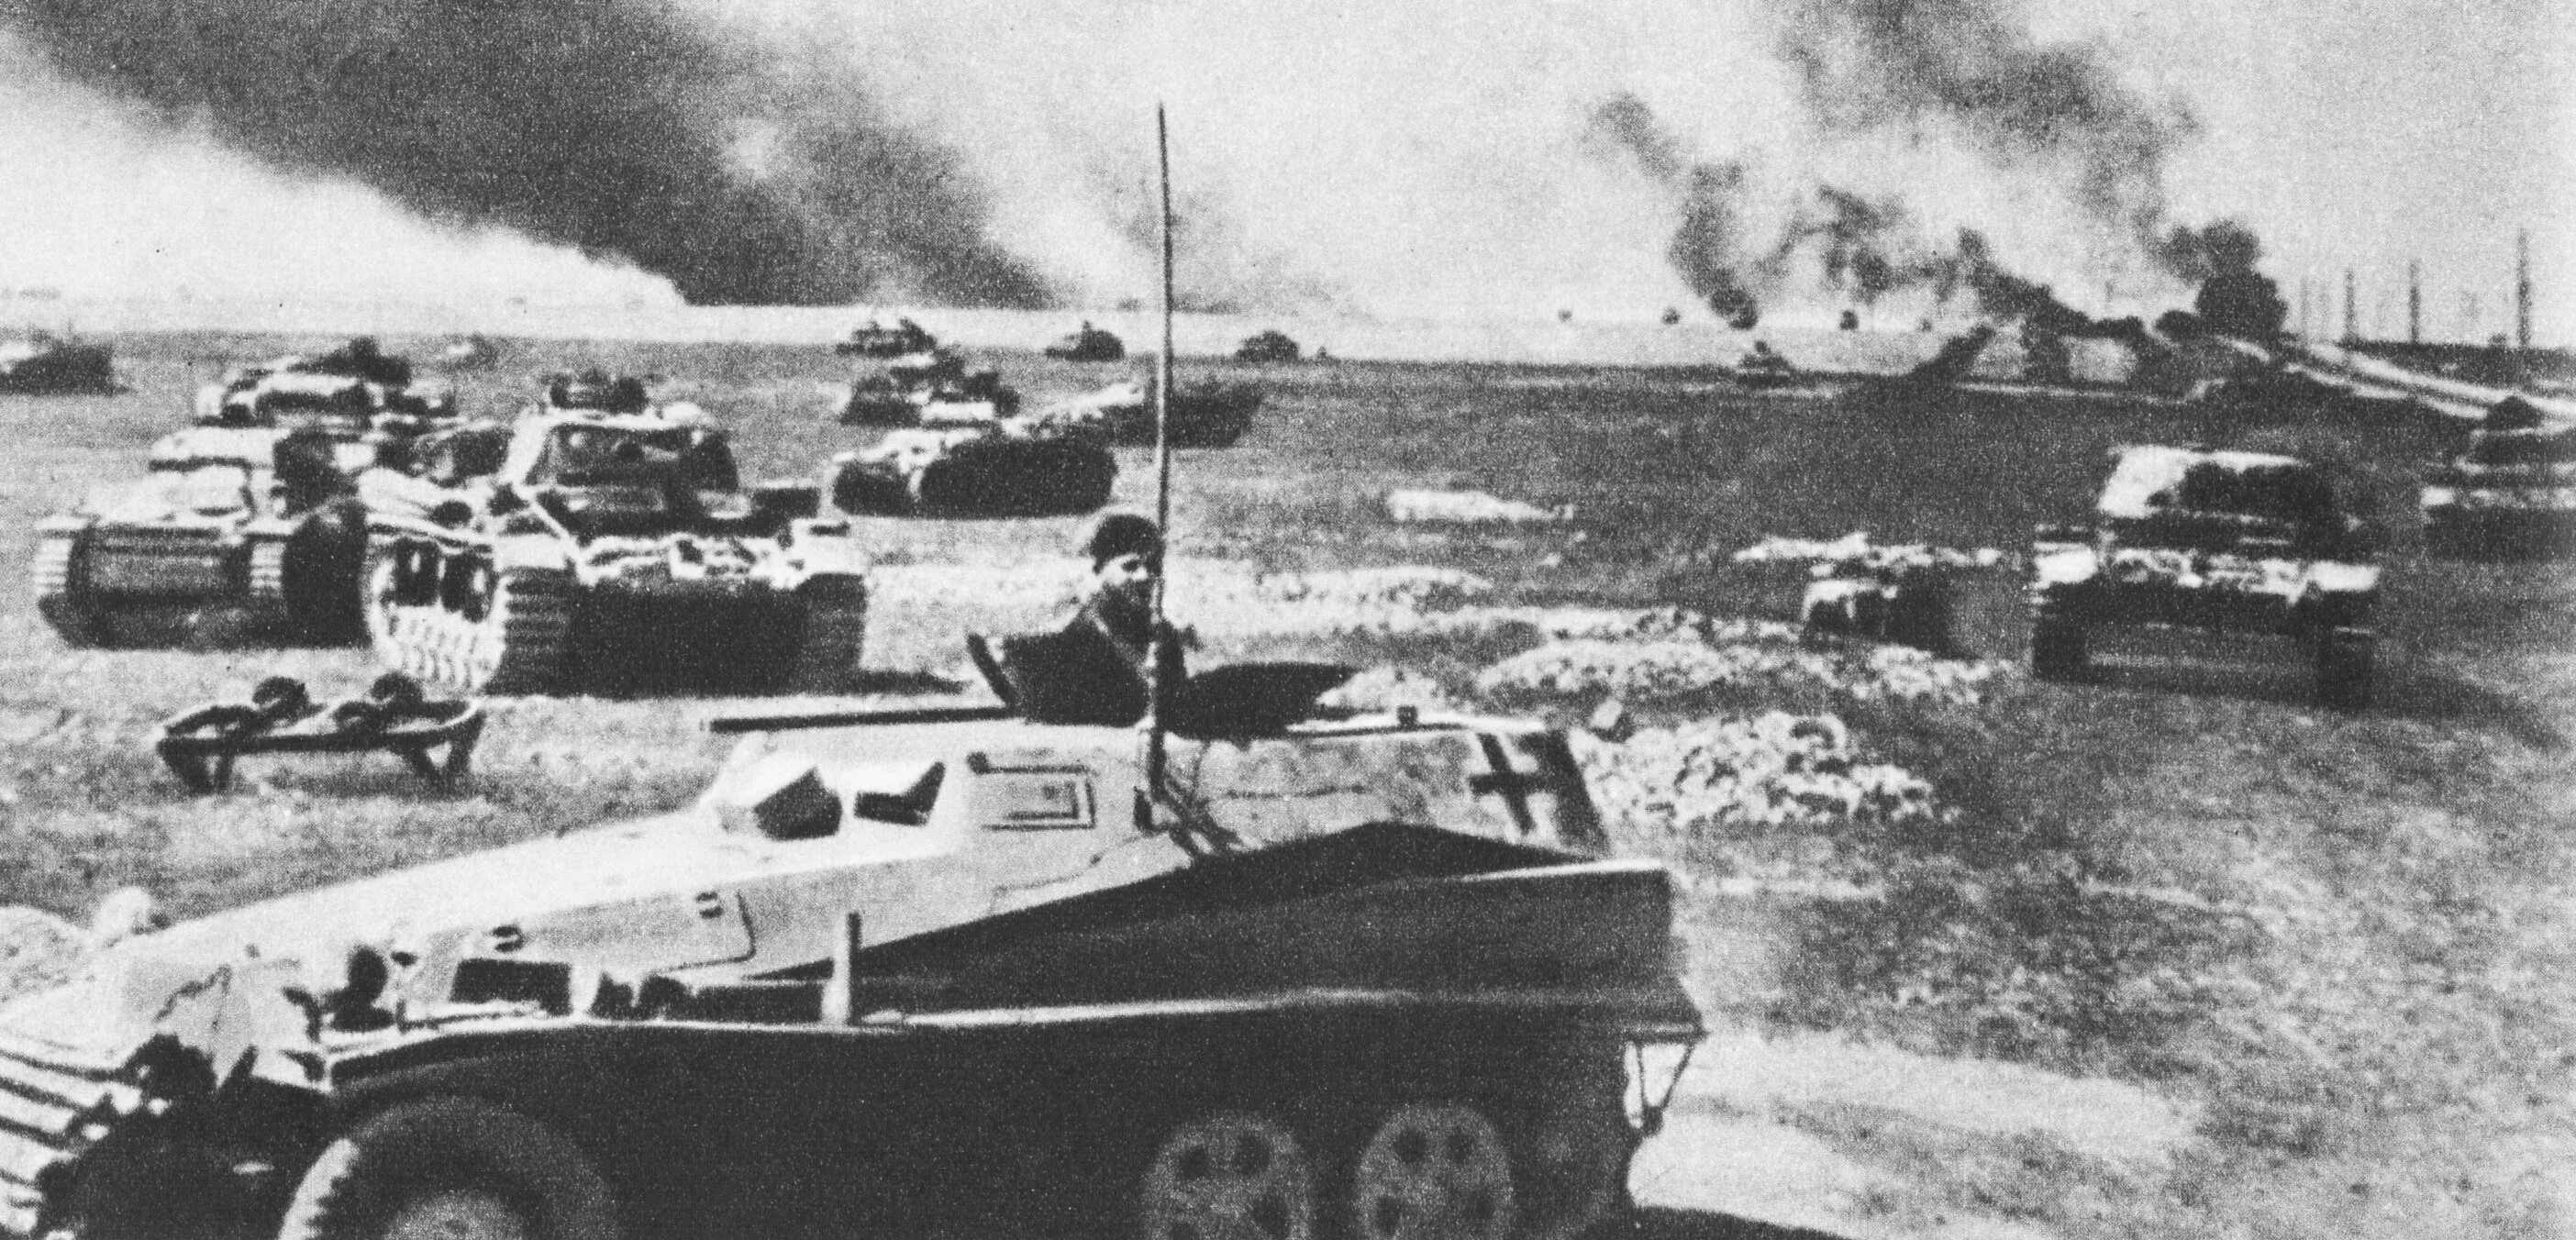 Нападение в июне. Наступление фашистов в 1941. Нападение Германии на СССР 22 июня 1941 г. Гитлеровские танки 1941. Магнитный механизм для подрыва танков.